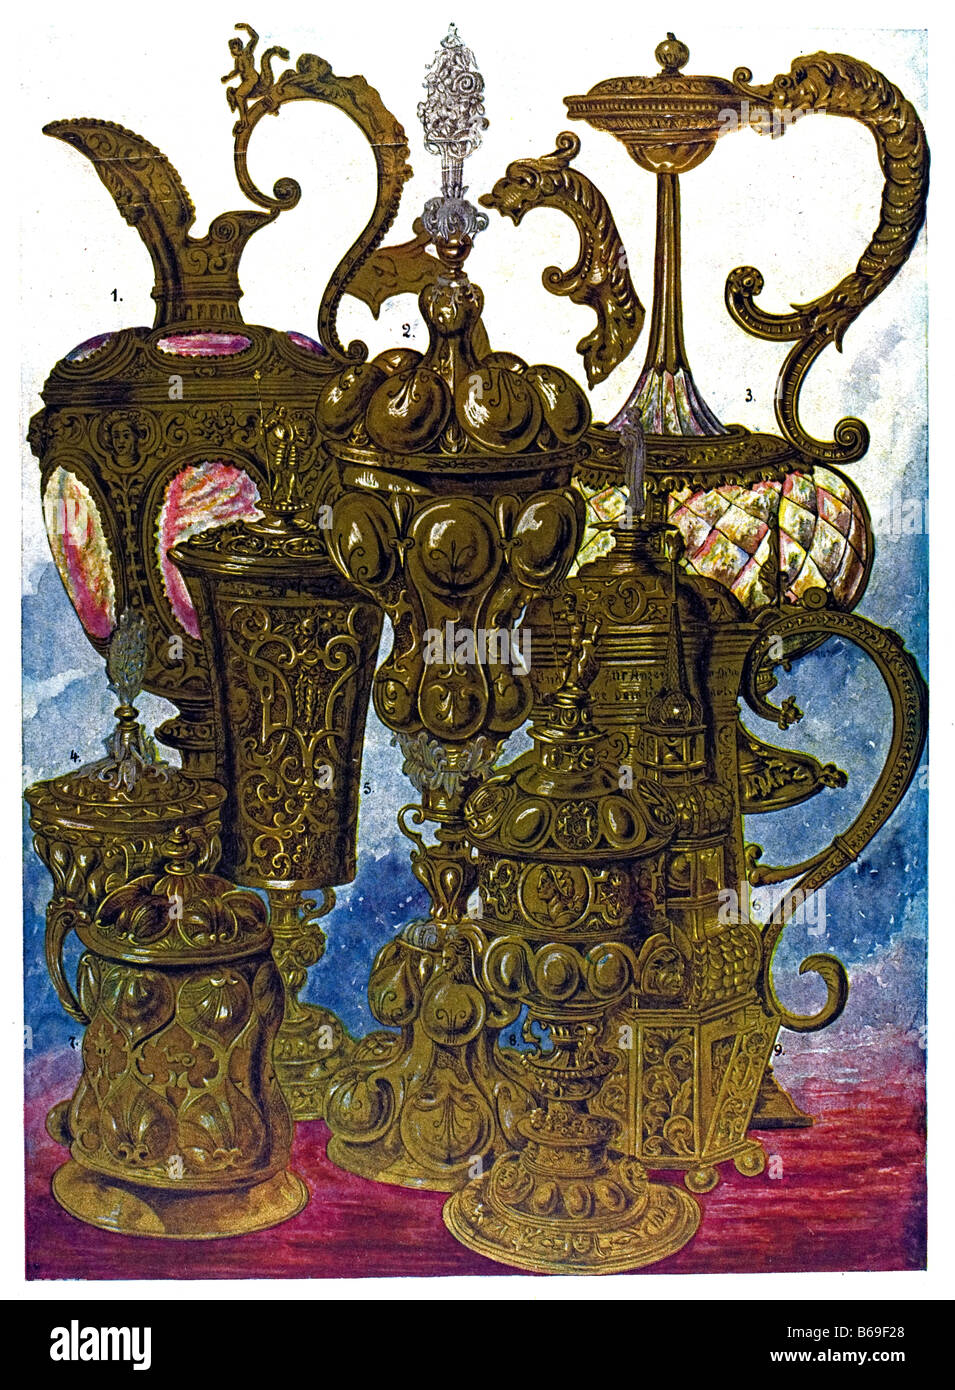 El alemán ornamento, obras de metales preciosos Foto de stock